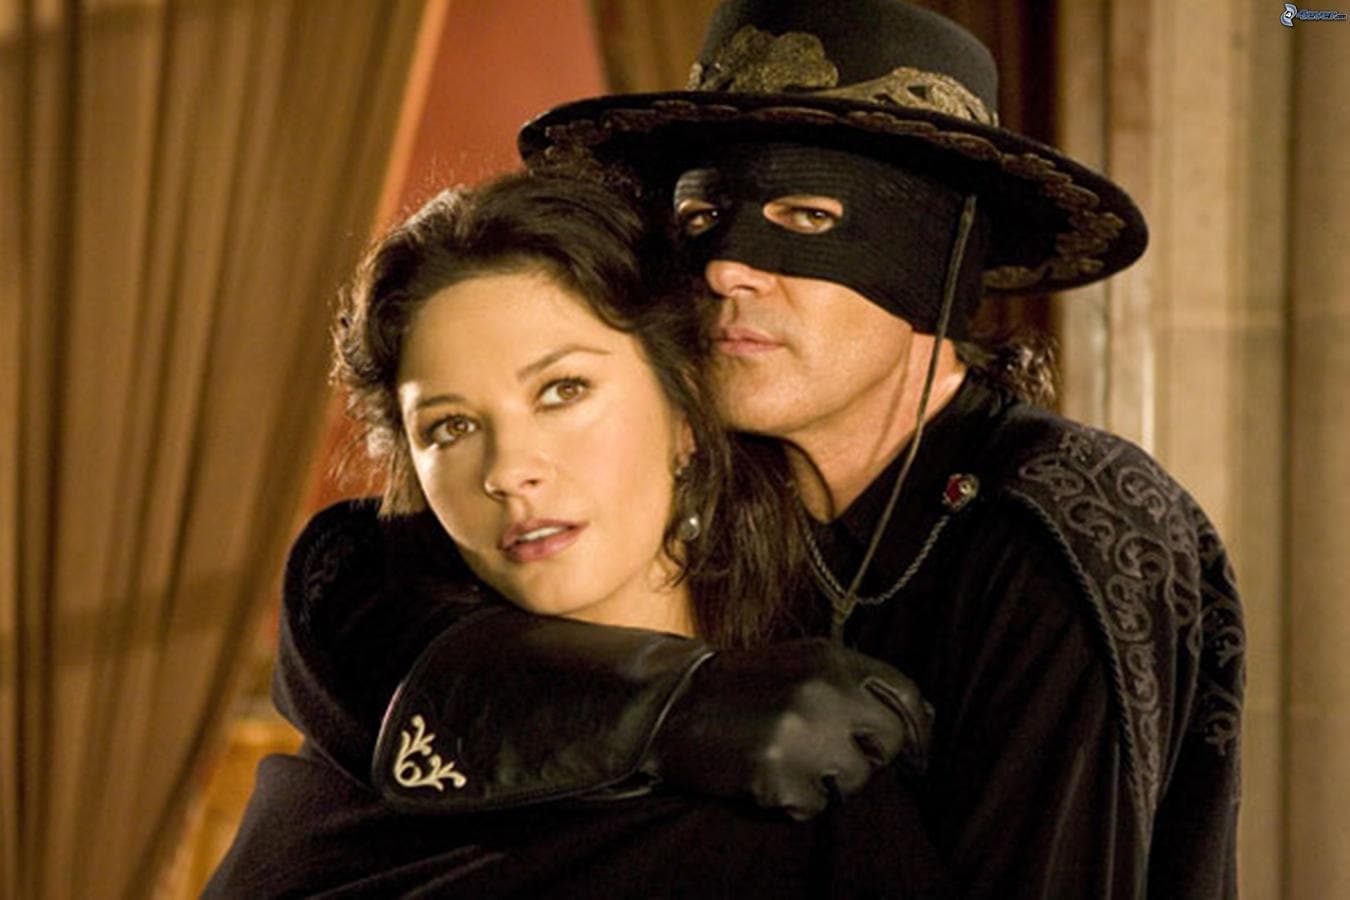 La máscara del zorro (1998). Este enmascarado y romántico héroe popular, conocido como El Zorro, le otorgó reconocimiento en todo el mundo